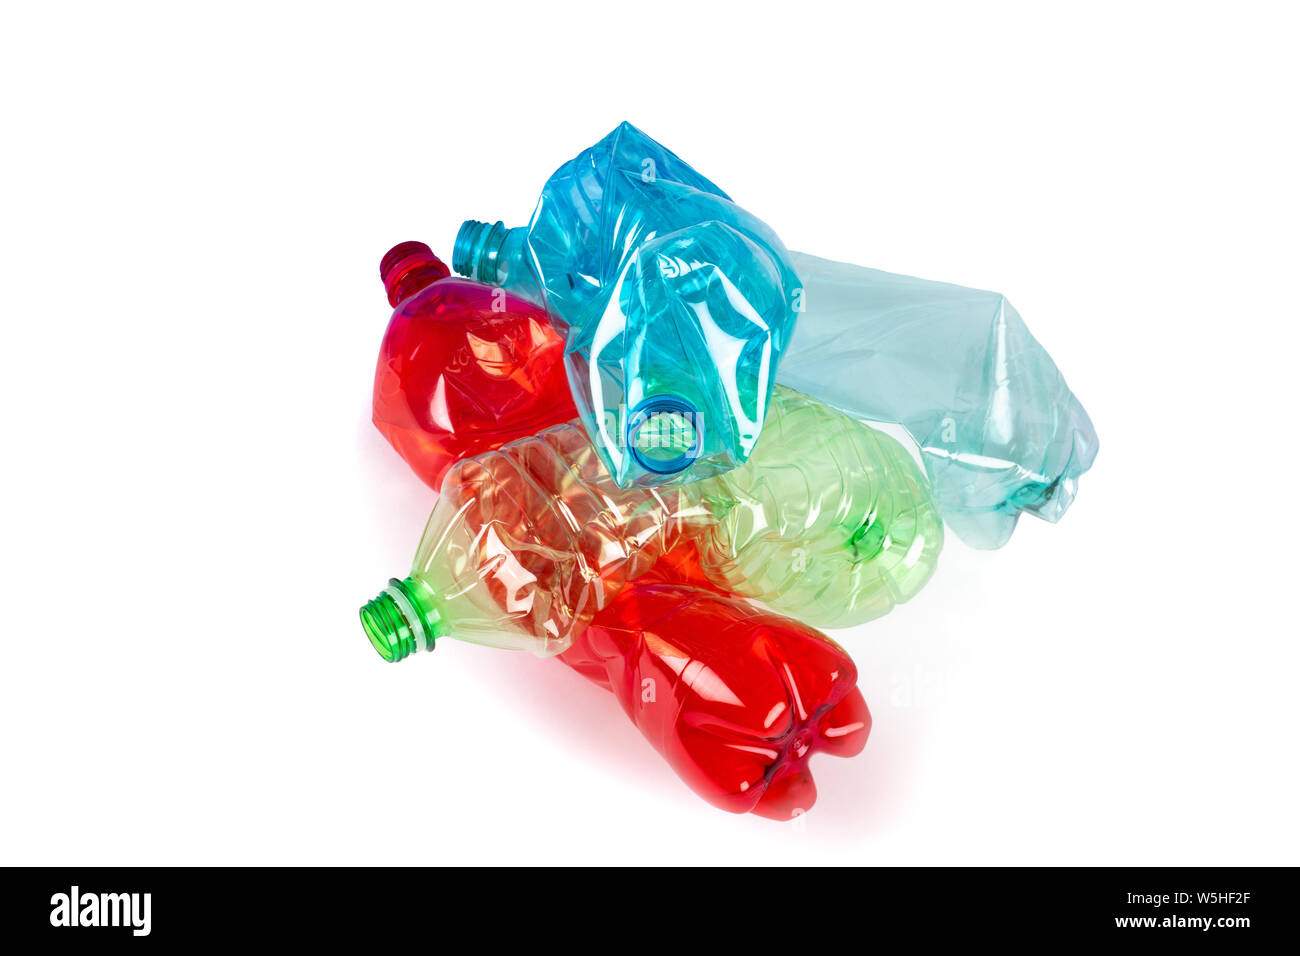 Crushed plastic bottles isolated on  white background Stock Photo